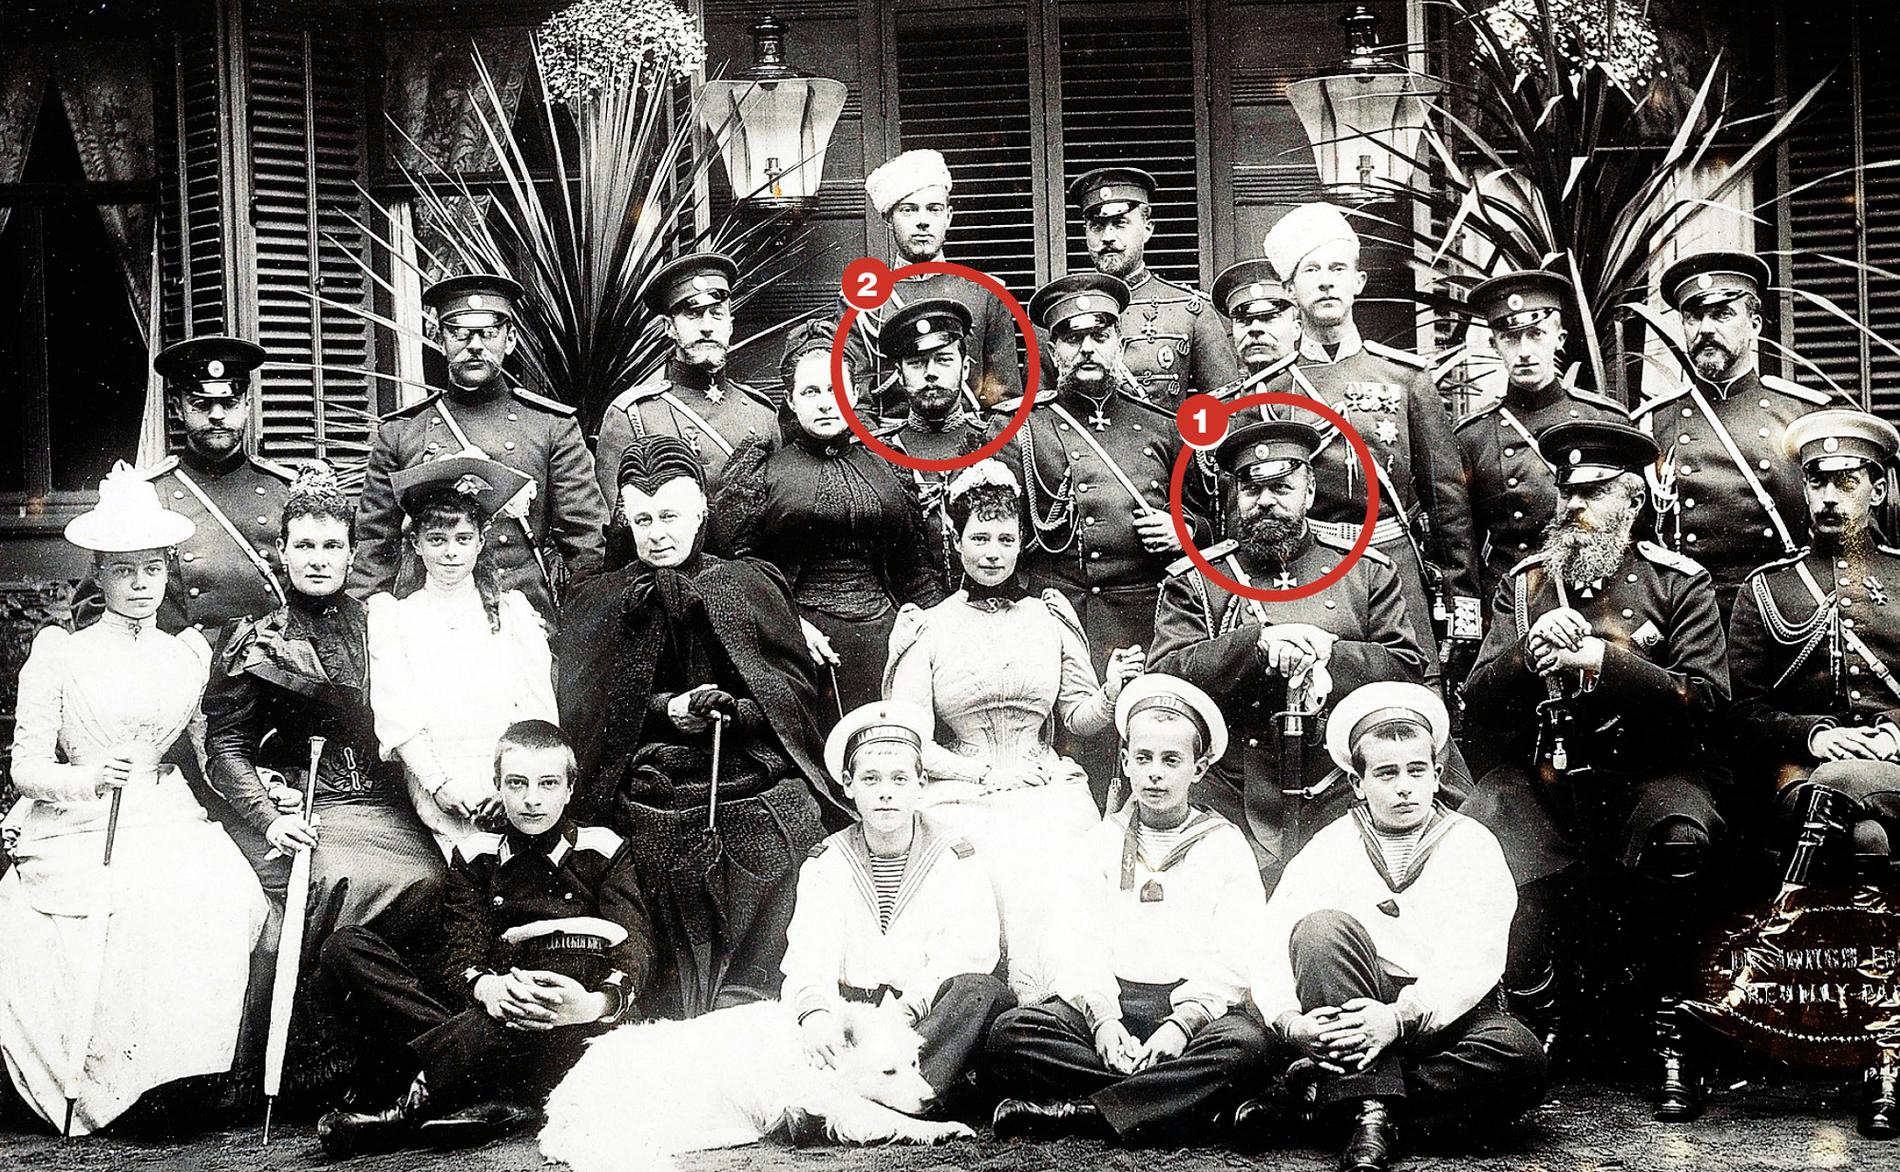 Delar av ätten Romanov samlad kring 1890. 1 Tsar Alexander III. 2 Nikolaj Alexandrovich Romanov som skulle bli den siste tsaren – Nikolaj II. Han avrättades av bolsjevikerna 1918.